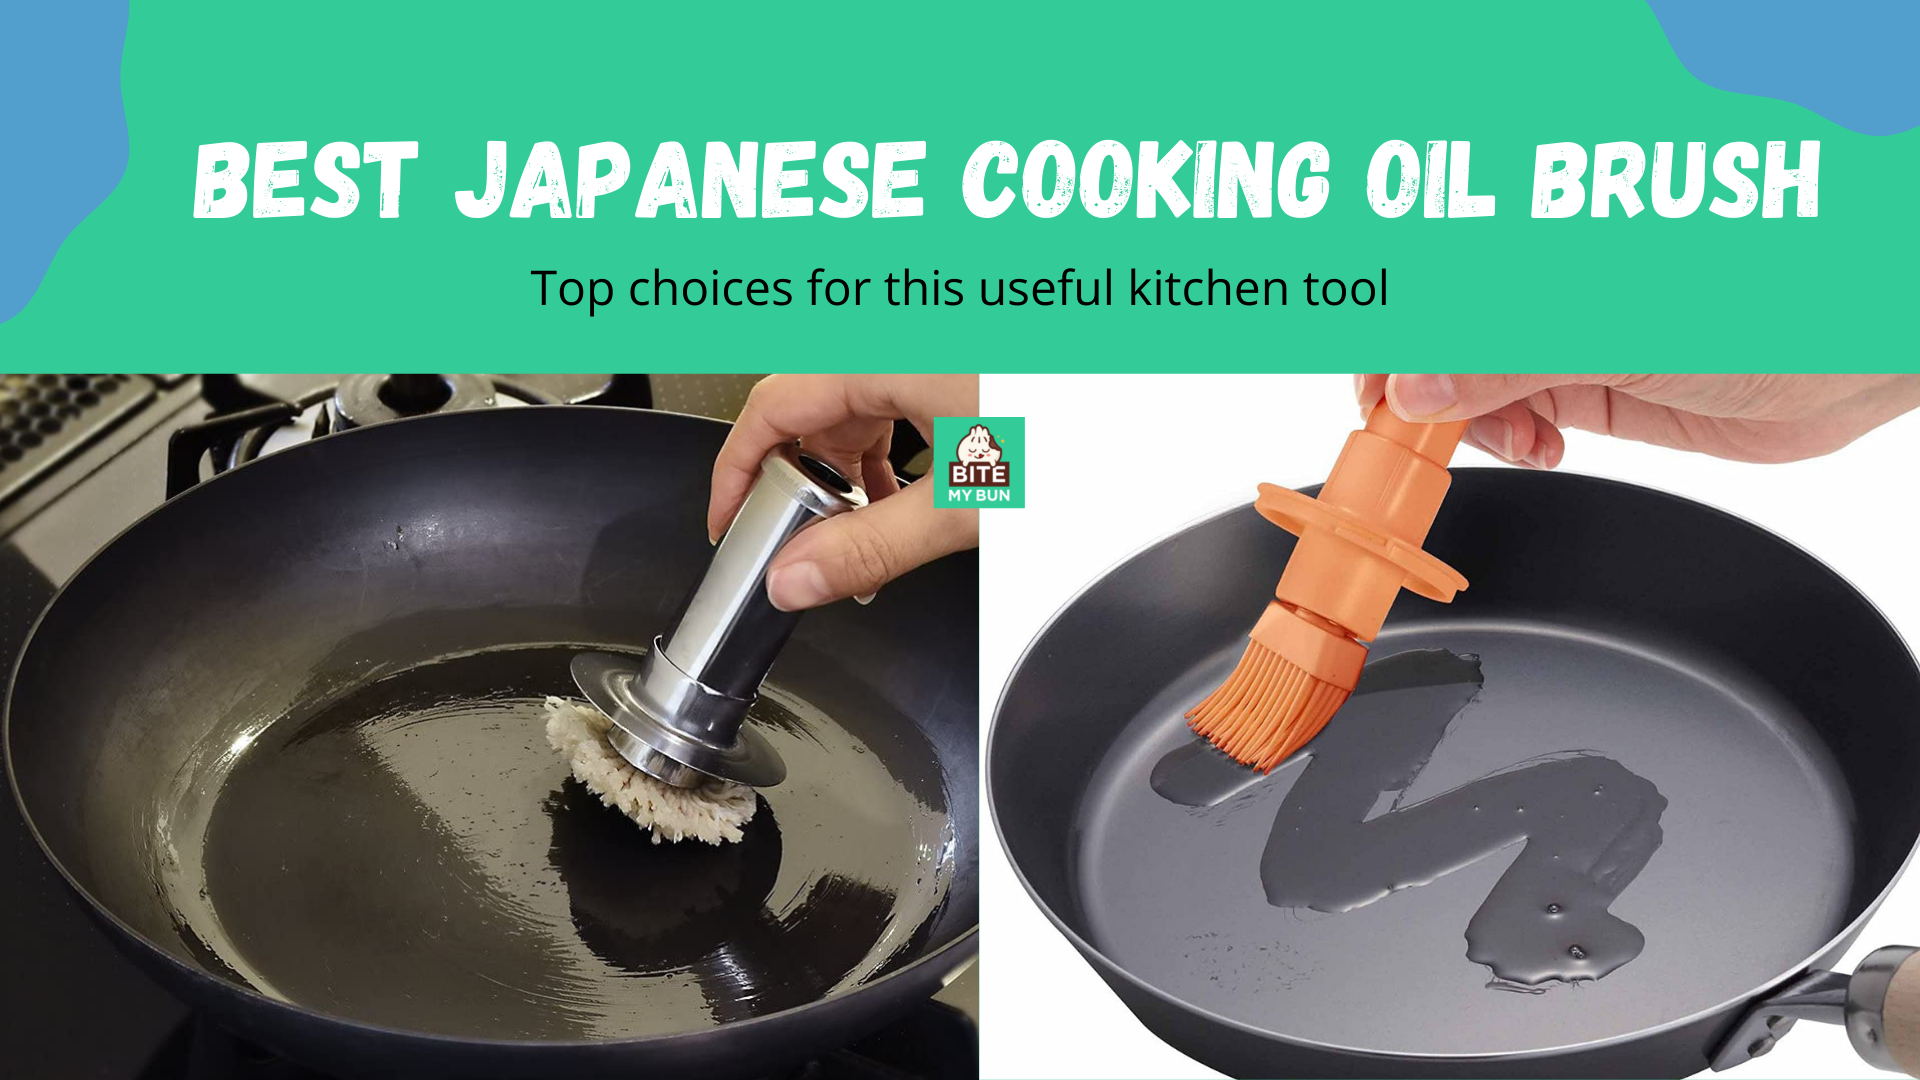 Cepillo de aceite de cocina japonesa | Las mejores opciones para esta útil herramienta de cocina